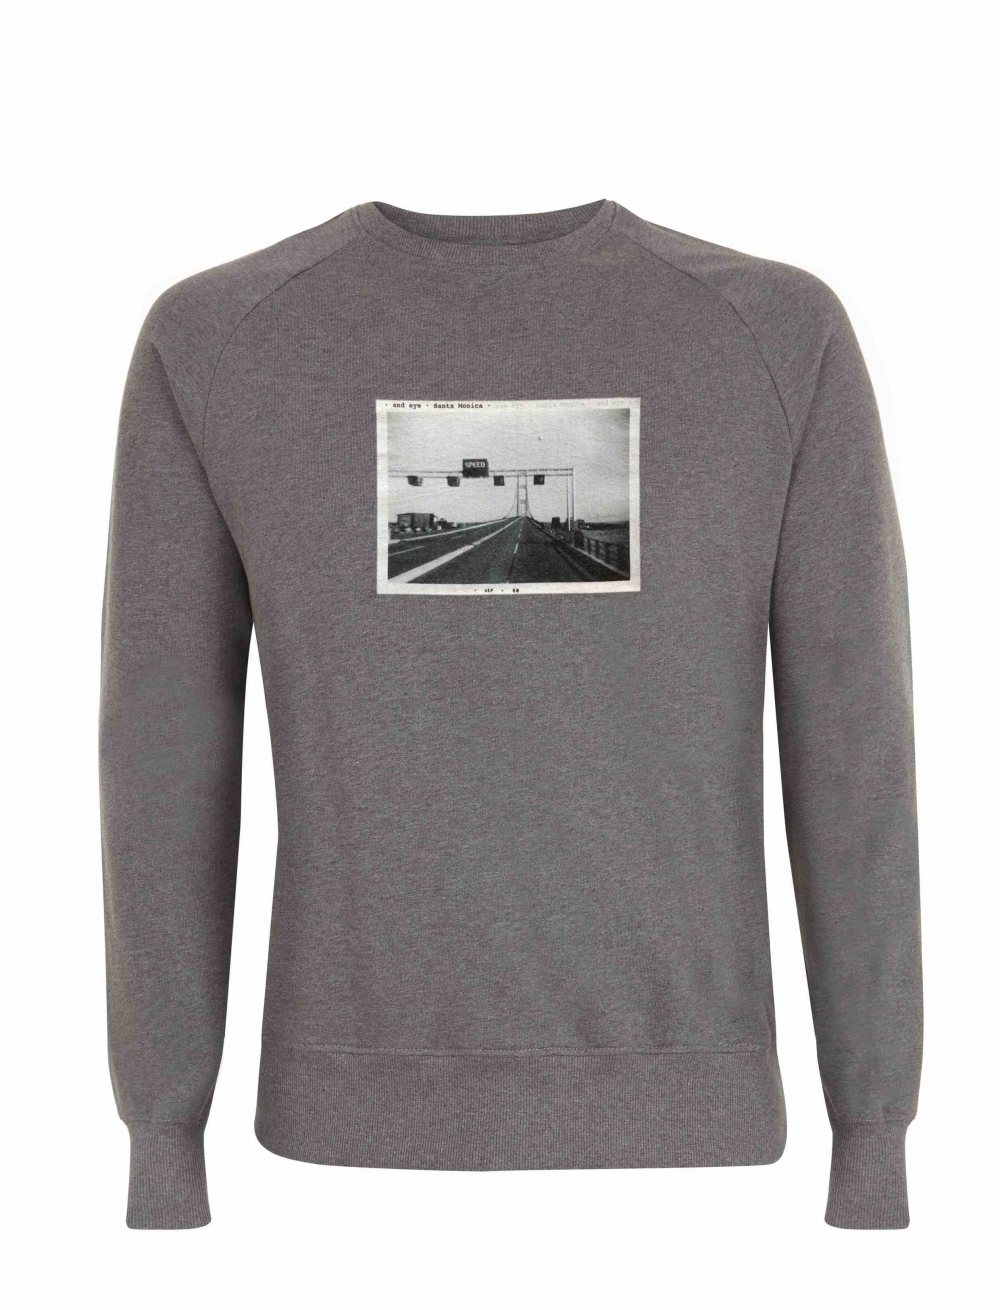 Suéter de algodón orgánico con imagen vintage